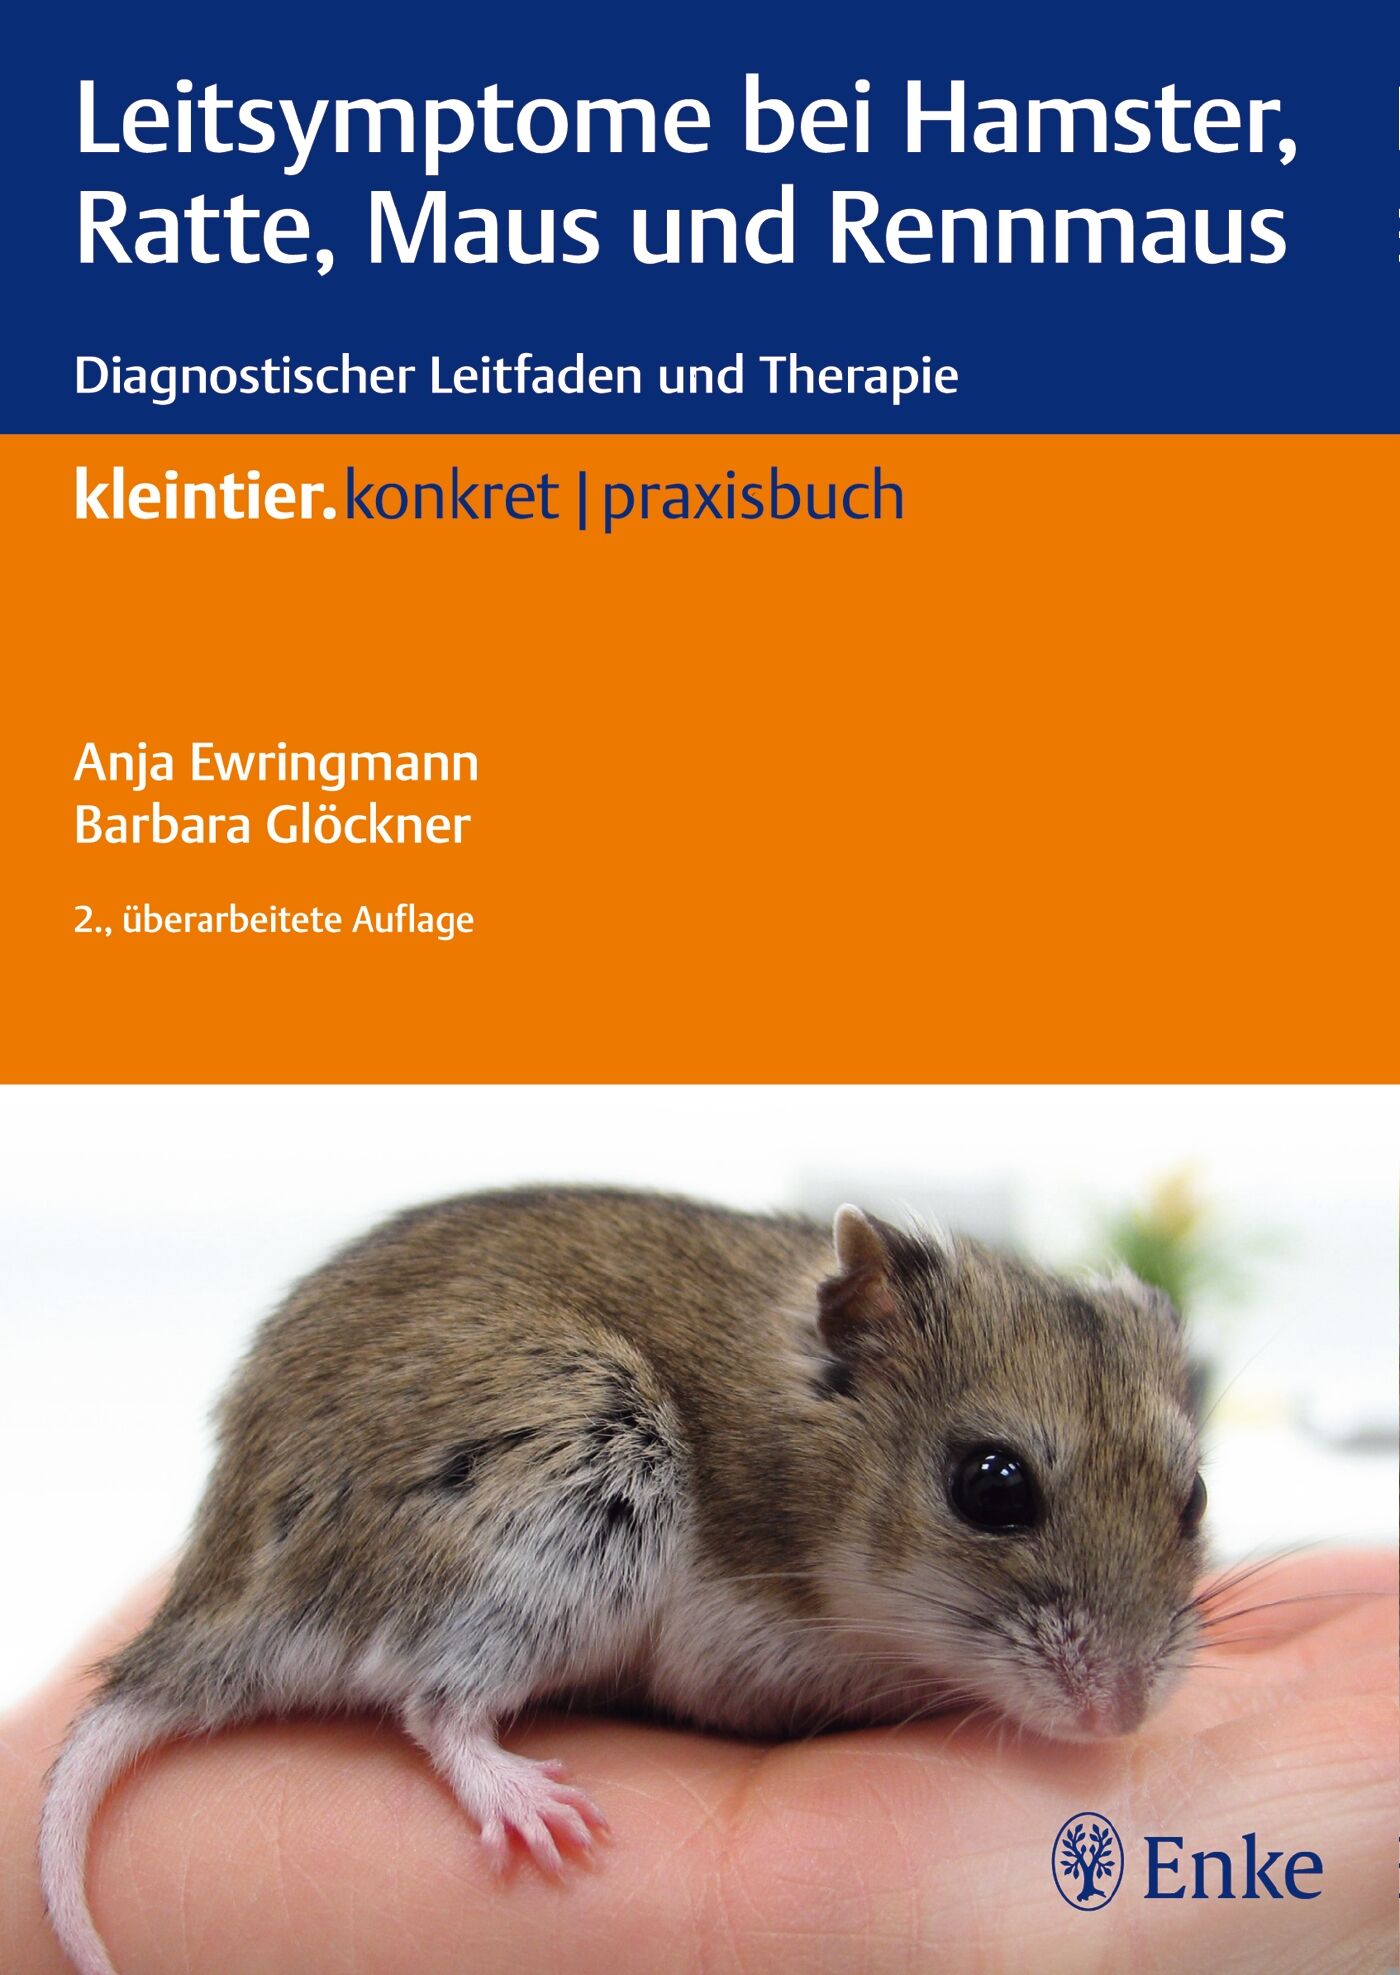 Leitsymptome bei Hamster, Ratte, Maus und Rennmaus, 9783830411642